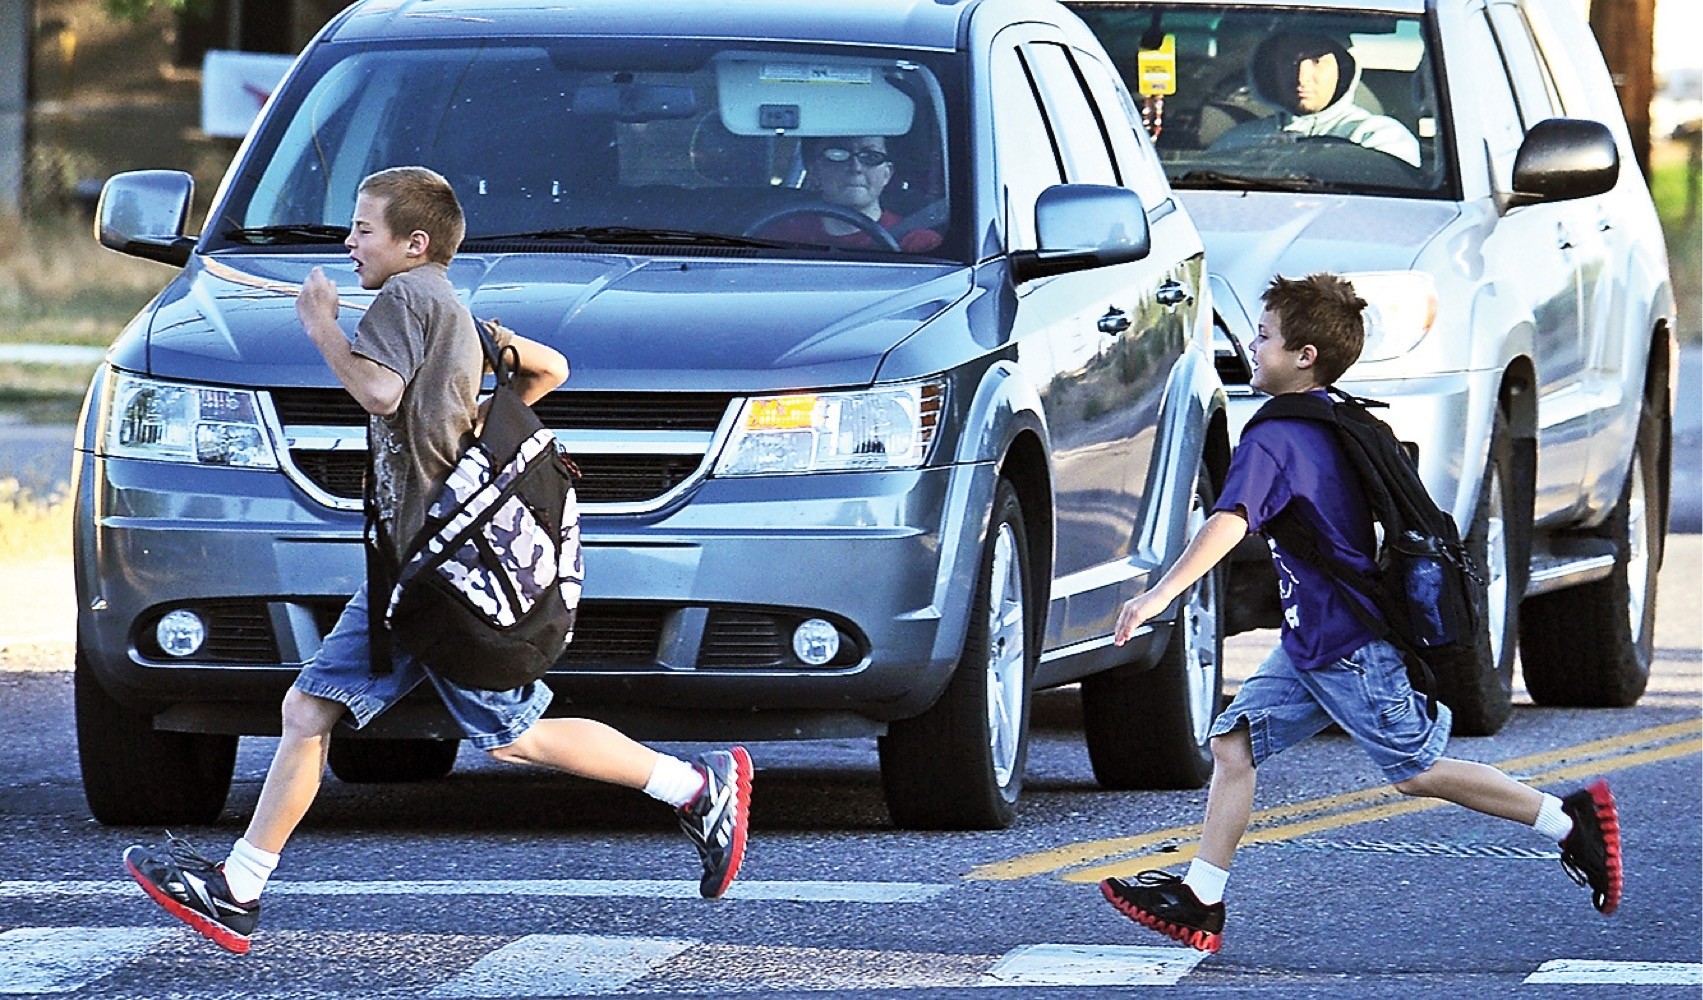 Дети играющие на дороге